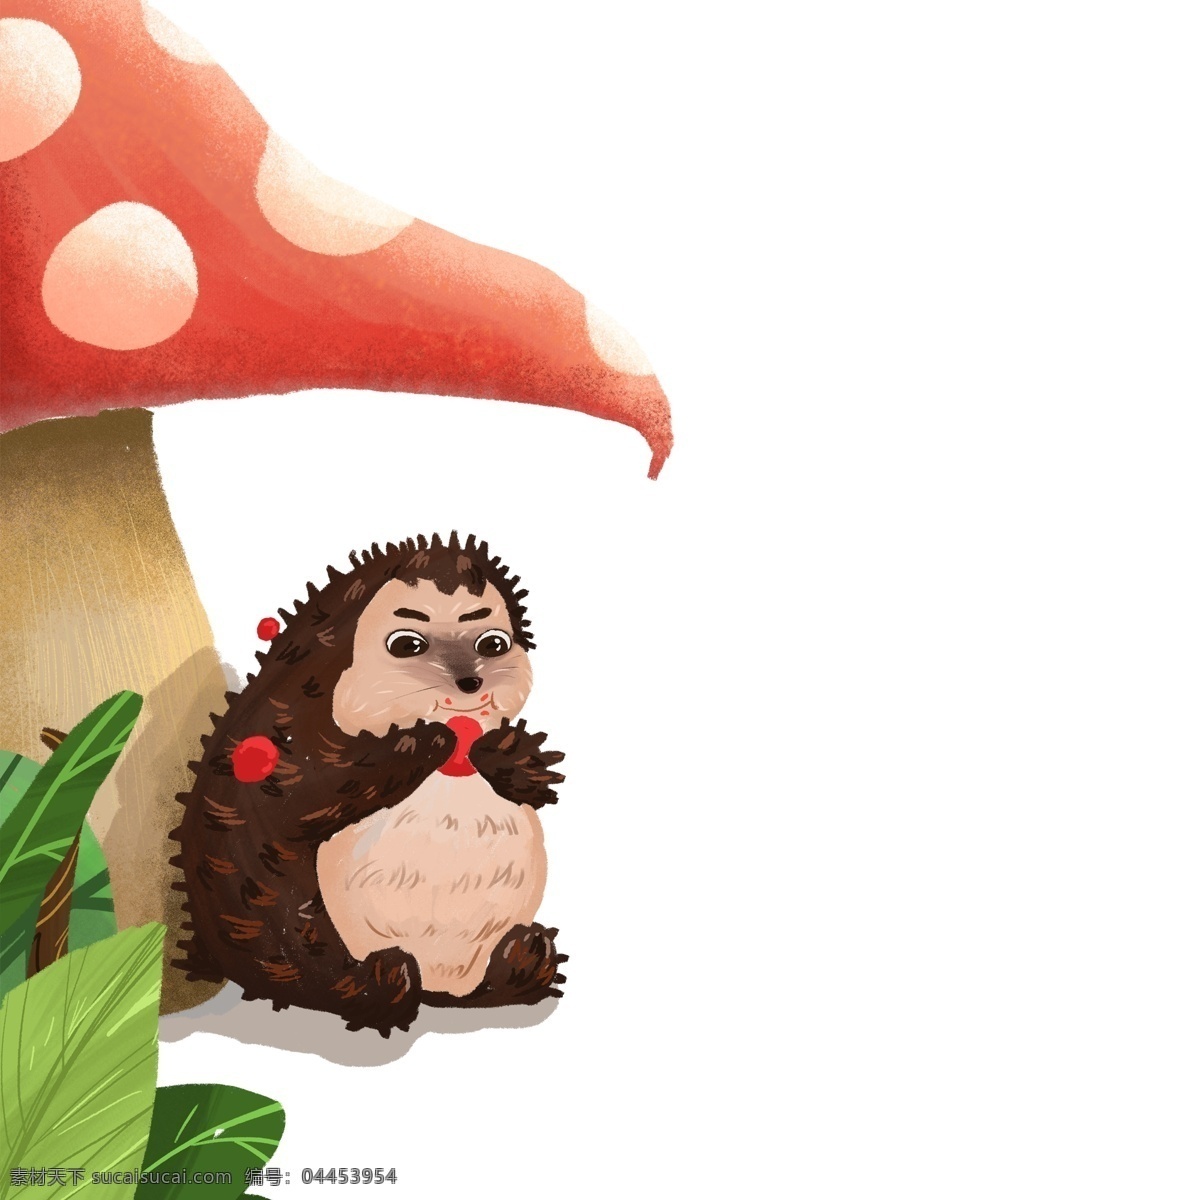 红色 蘑菇 动物 免 抠 图 卡通动物 动物插画 小动物 刺猬 可爱的动物 红色蘑菇 植物叶子 生态植物 免抠图